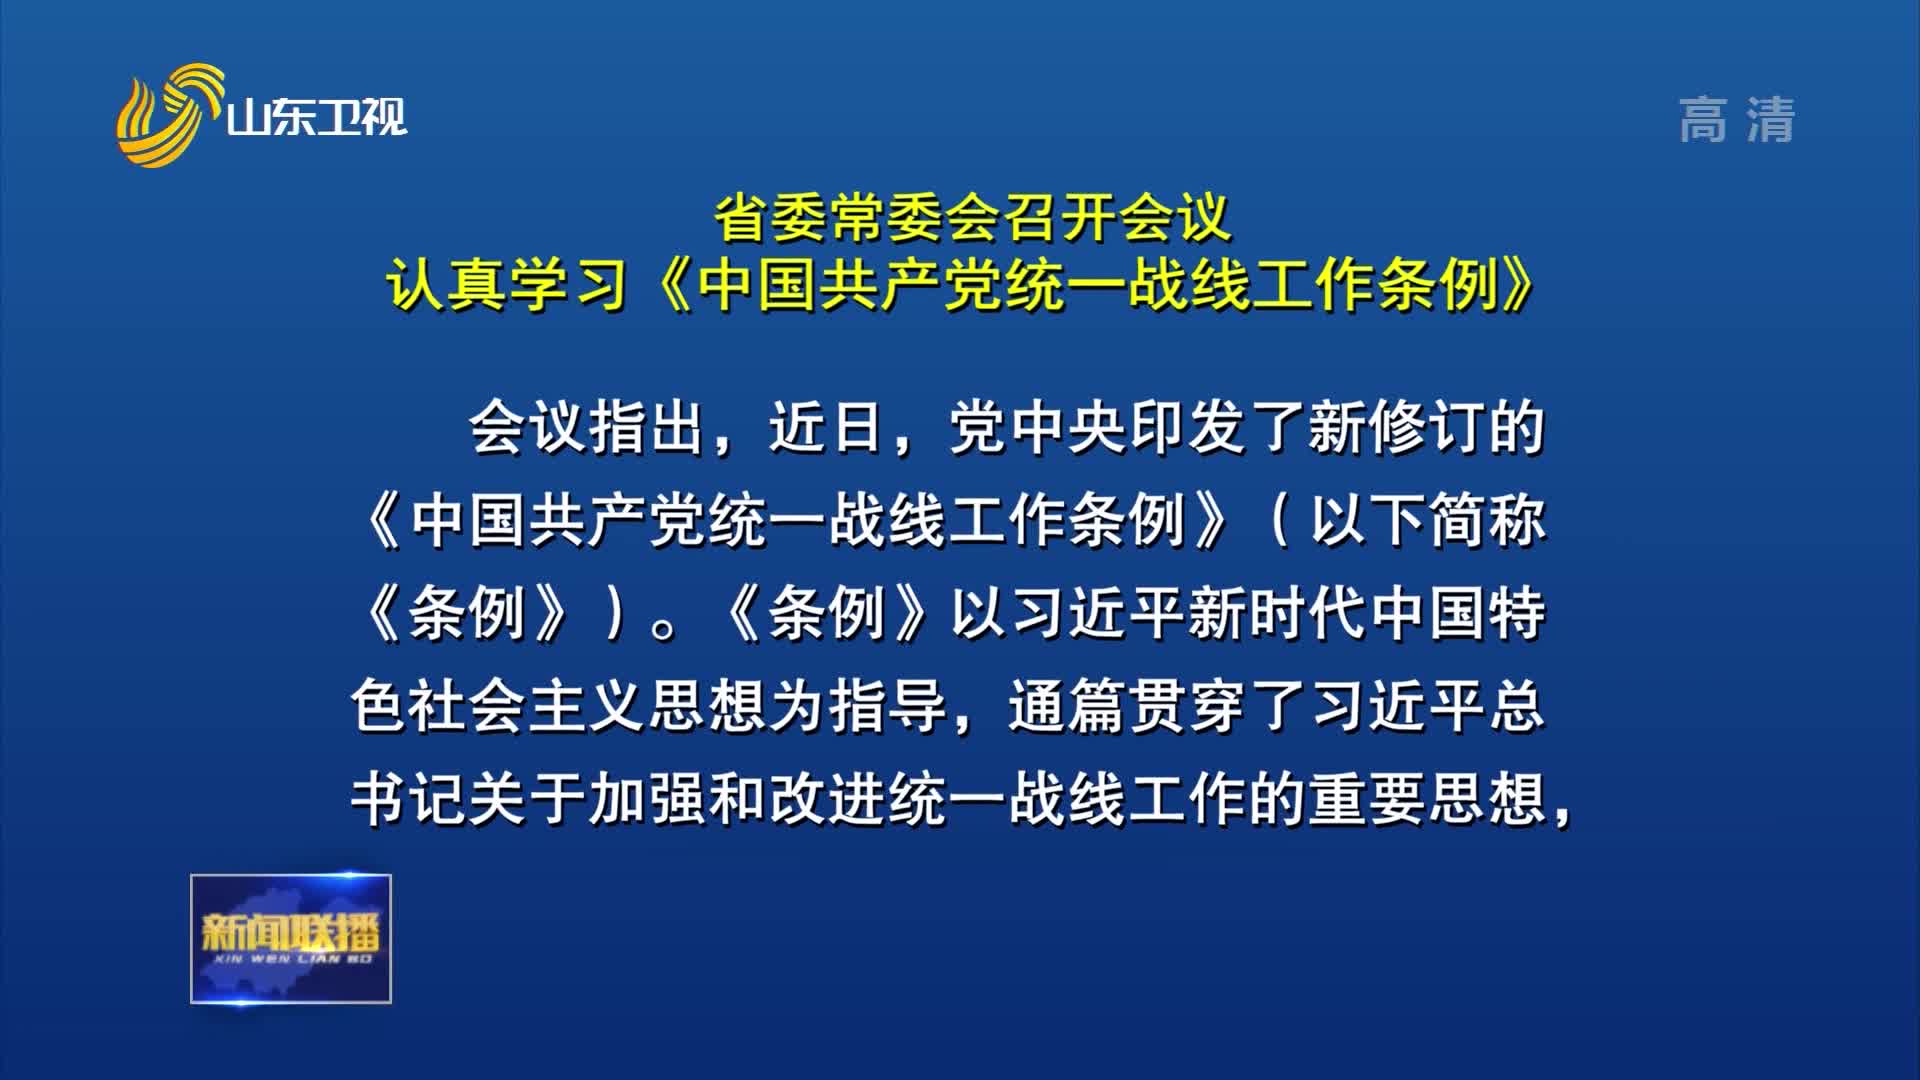 省委常委会召开会议 认真学习《中国共产党统一战线工作条例》